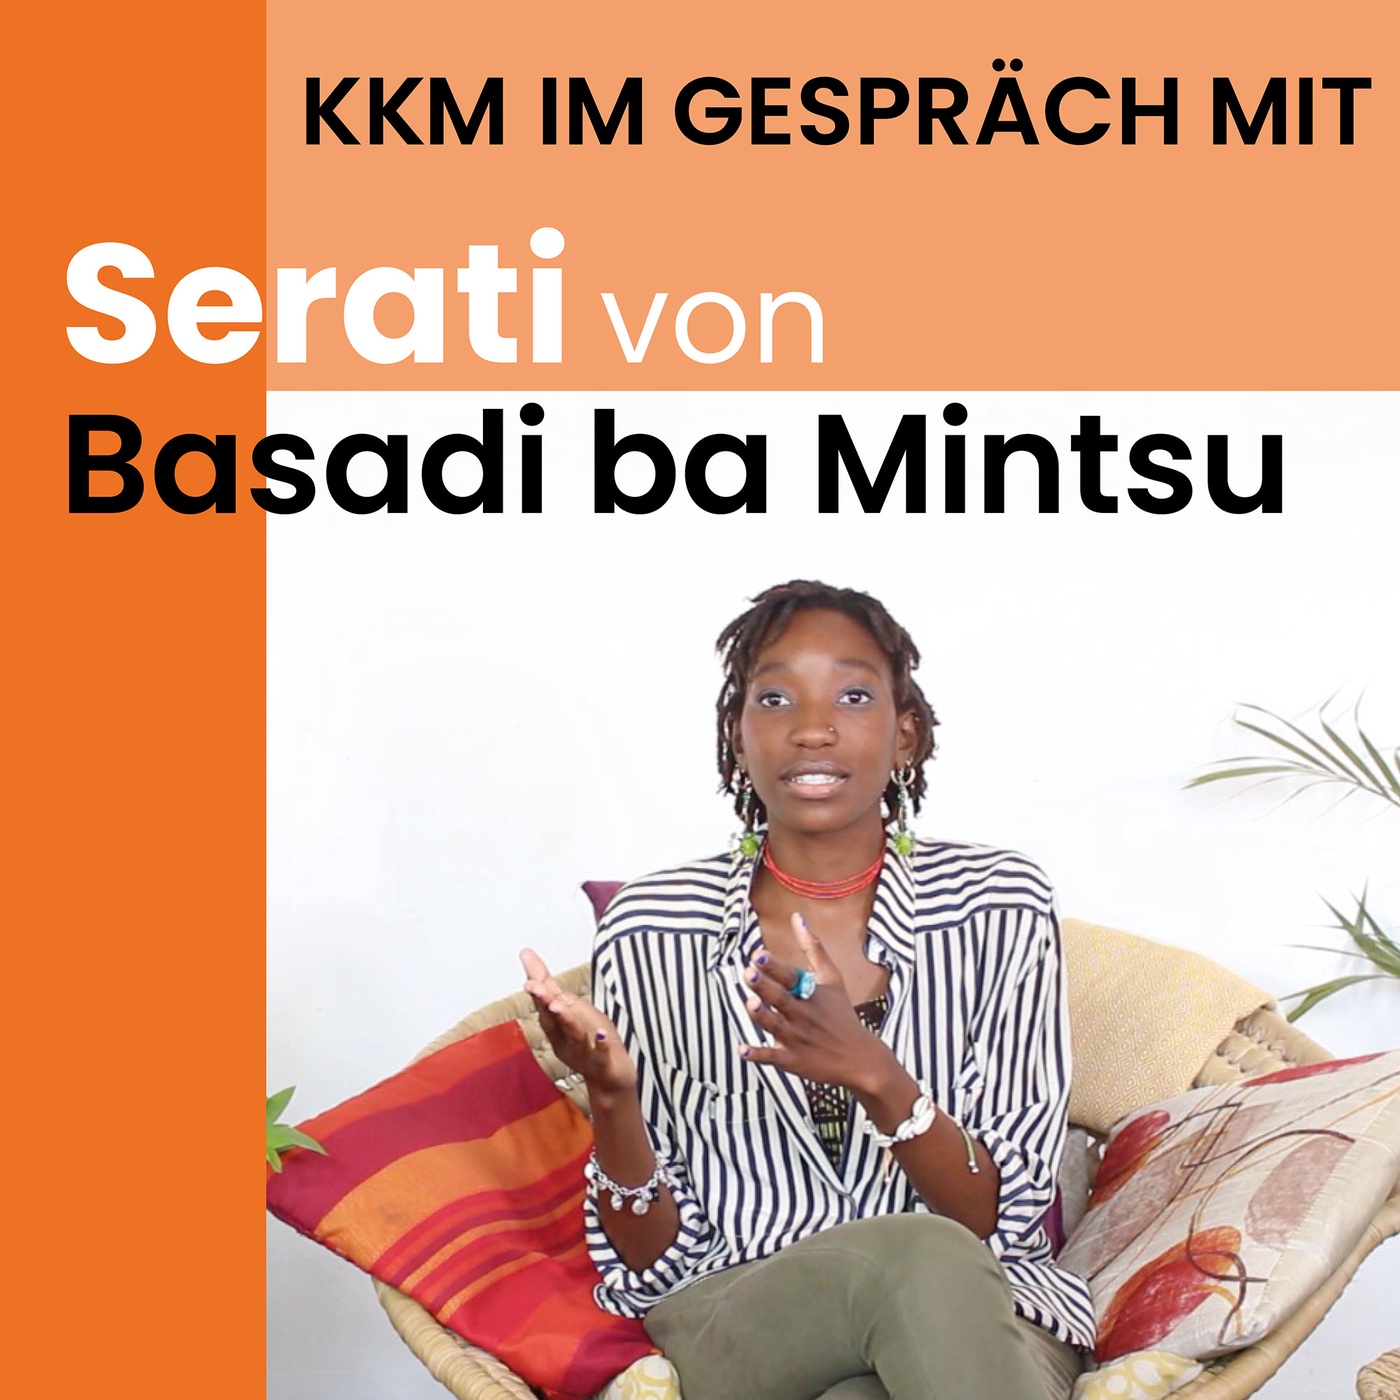 Basadi ba Mintsu ǀ Musik und Aktivismus in Mosambik